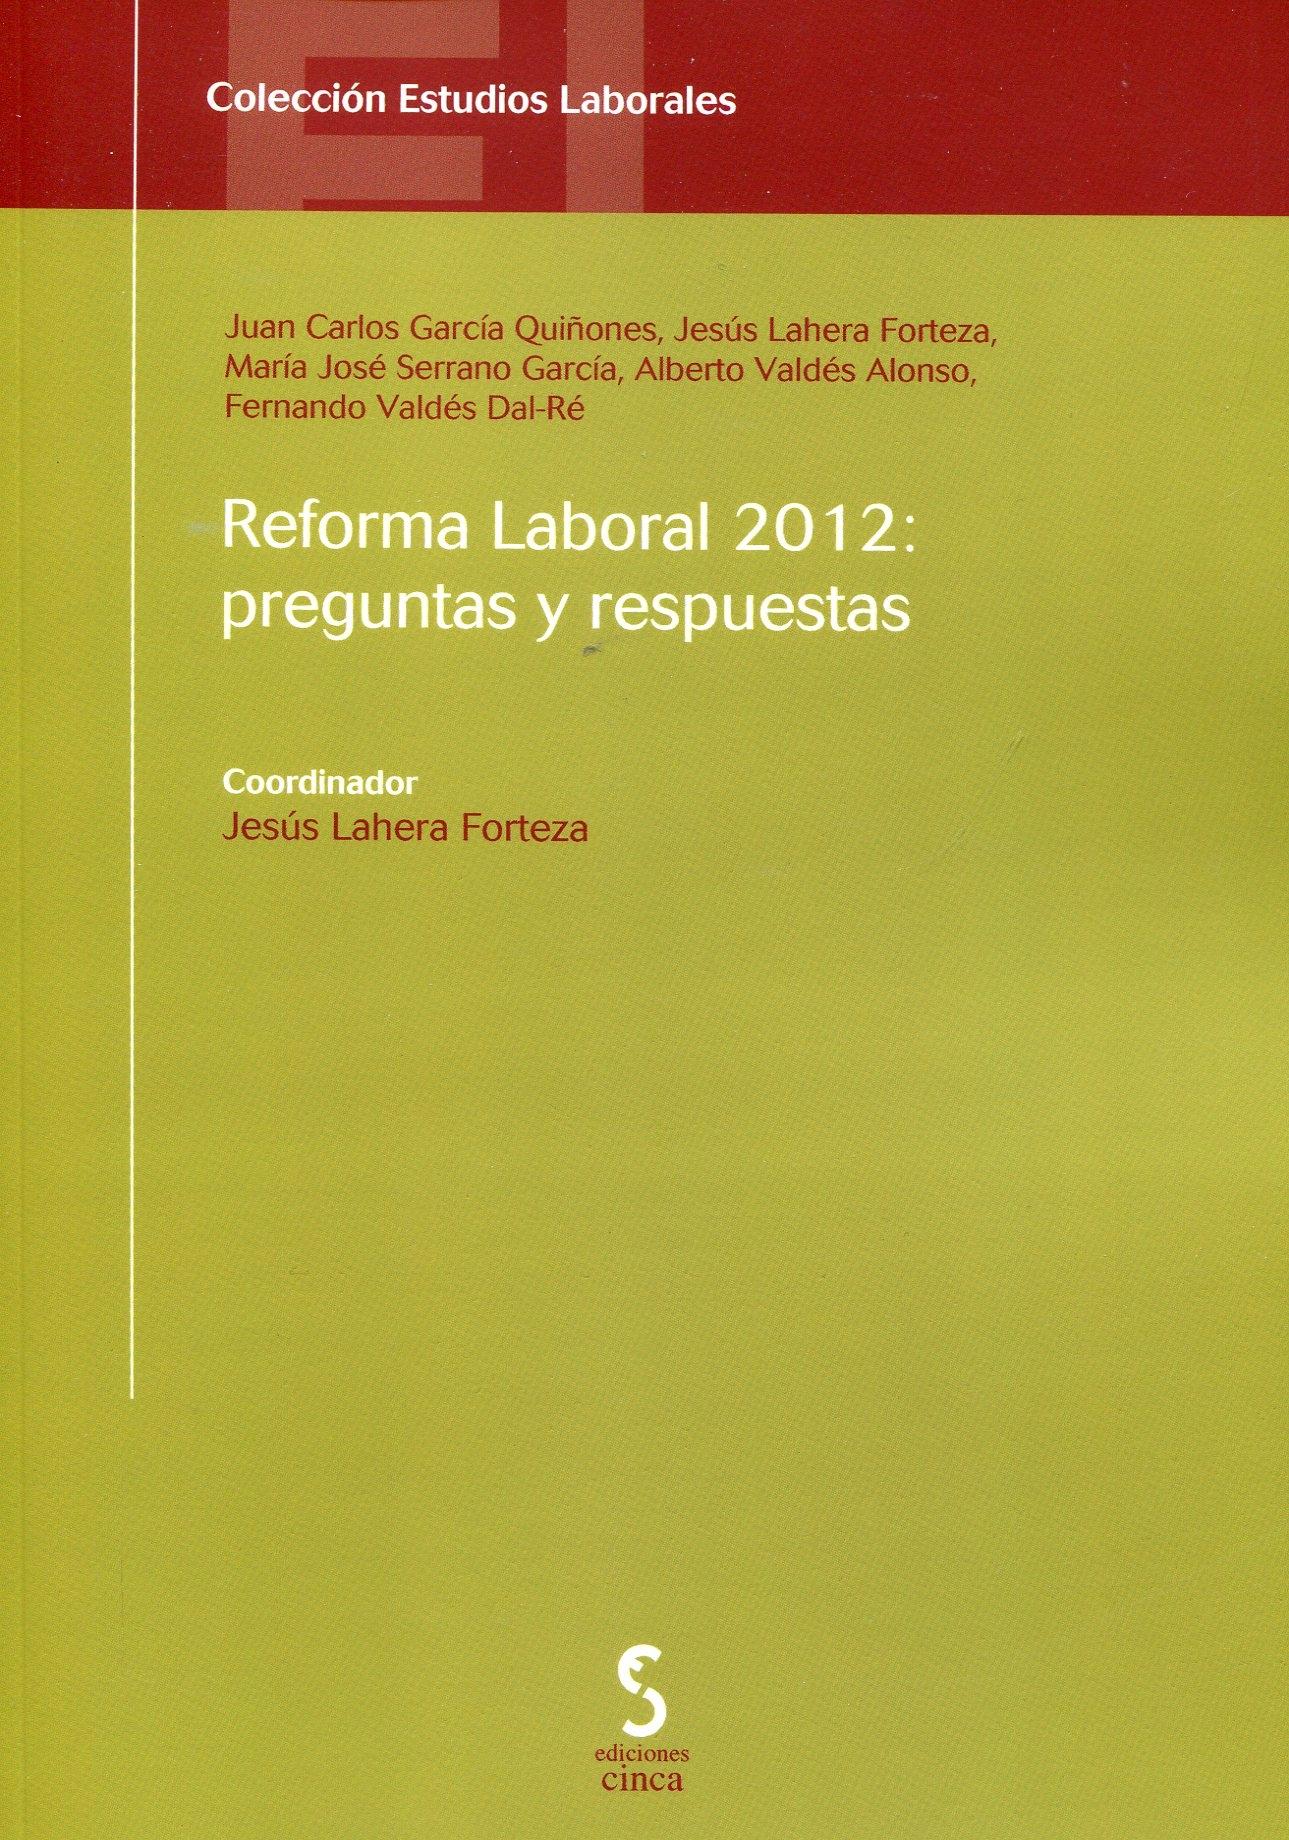 Reforma Laboral 2012 "Preguntas y respuestas"